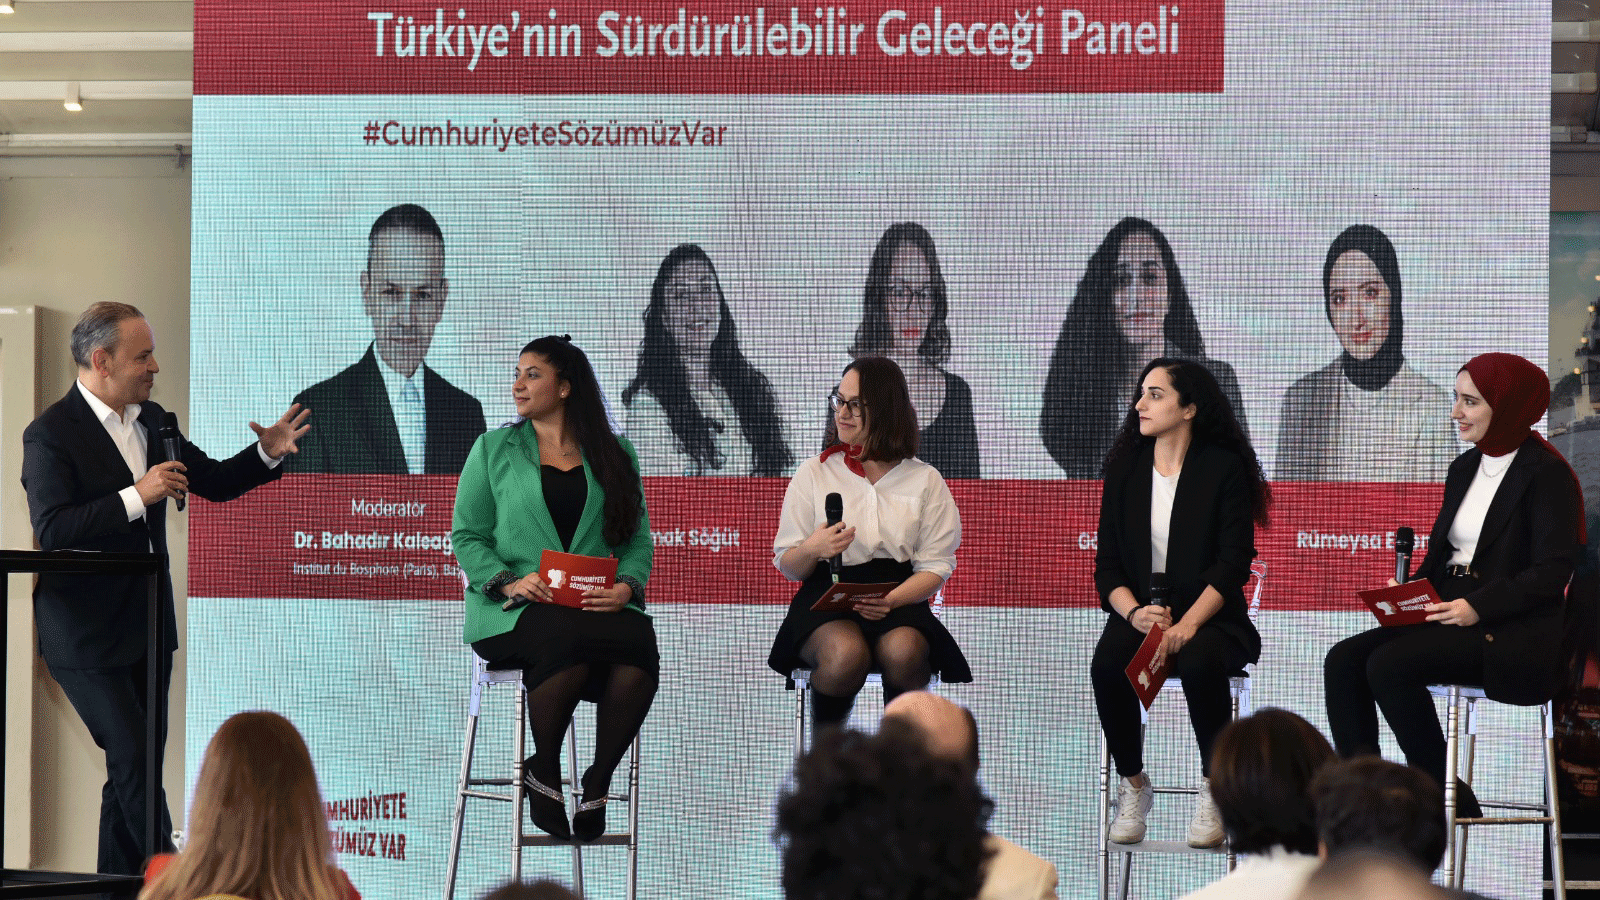 Bahadır Kaleağası, Irmak Söğüt, İrem Polat, Göksu Satıcı ve Rümeysa Erten Türkiye'nin Sürdürülebilir Gerçeği Paneli'nde sahnede